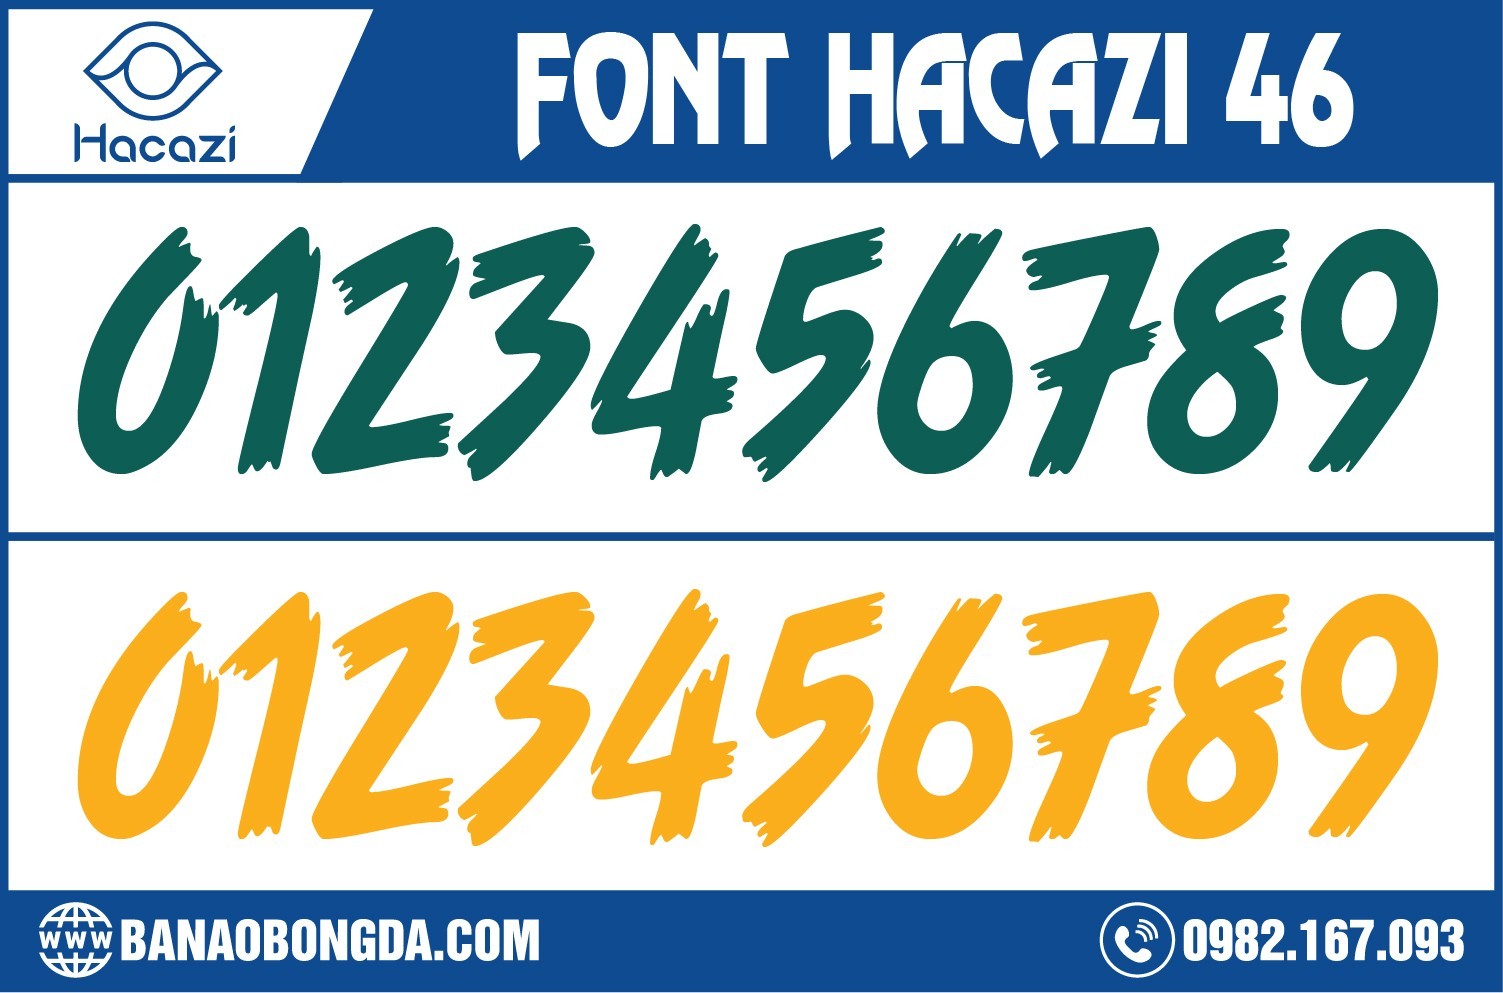 Đây cũng không phải là lần đầu tiên mà gam màu vàng và màu xanh được sử dụng để tạo nên một mẫu font số hoàn chỉnh thay vì chỉ đóng vai trò là màu nhấn nhá thêm như trước nữa. Và thật tuyệt khi hiệu ứng mà màu này mang đã đến cho mẫu font số áo bóng đá 46 đẹp được ra mắt tại Shop Hacazi Sport. 